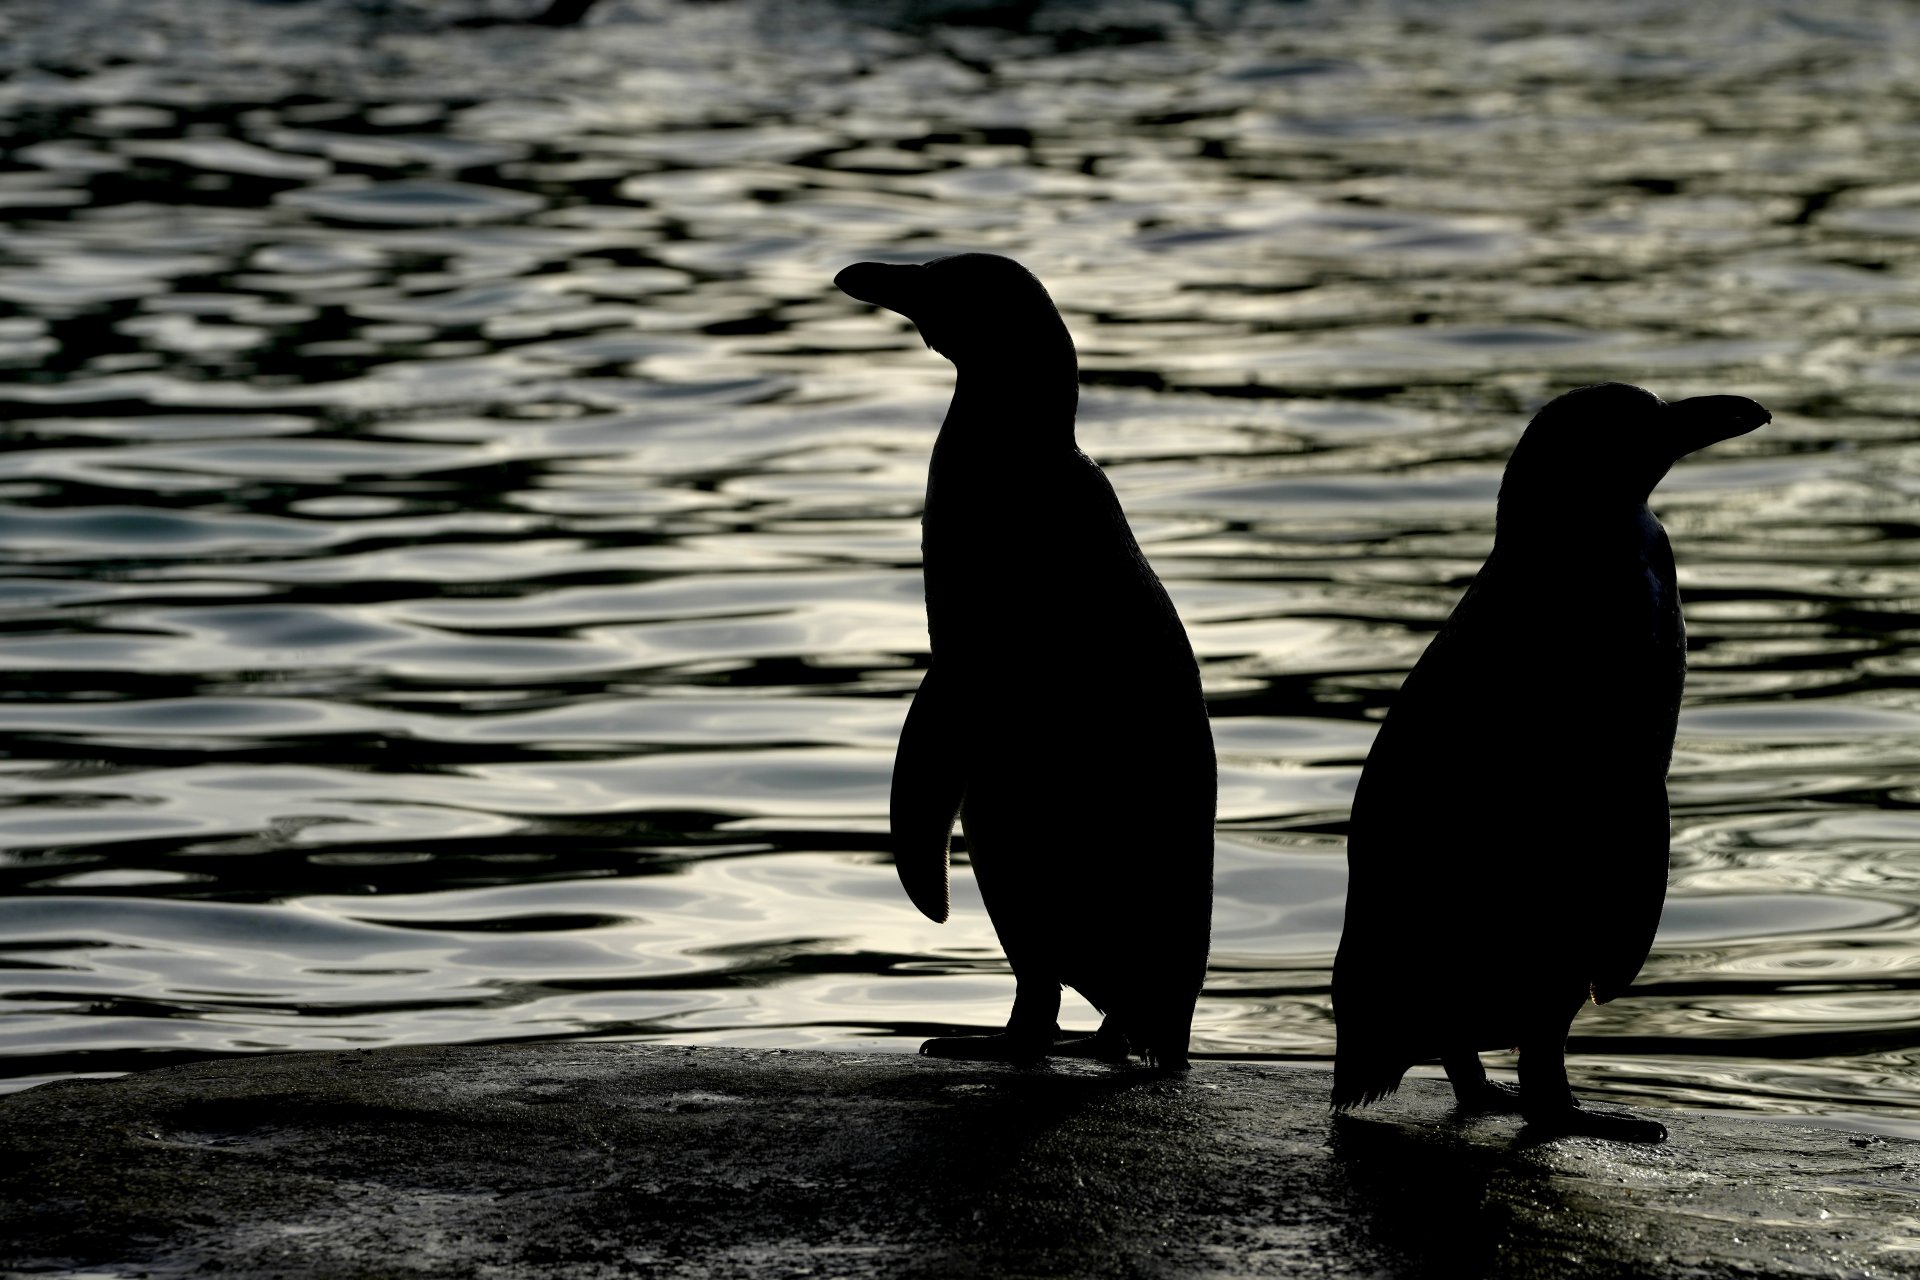 Популацията на императорските пингвини намалява, установи изследване